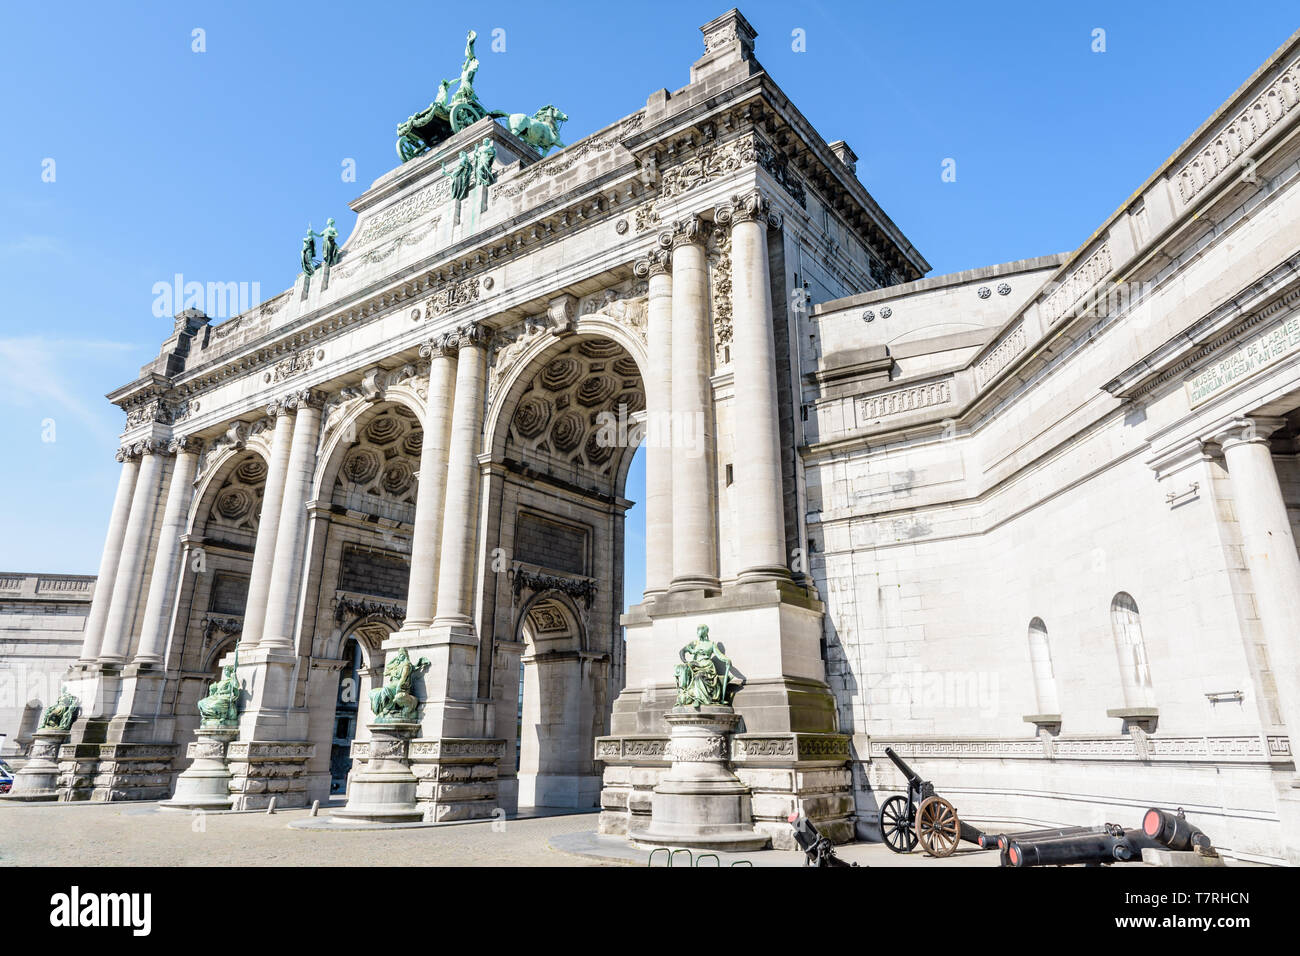 Low angle view de la côté est de l'arcade du Cinquantenaire, l'Arc de Triomphe érigé dans le parc du Cinquantenaire à Bruxelles, Belgique. Banque D'Images